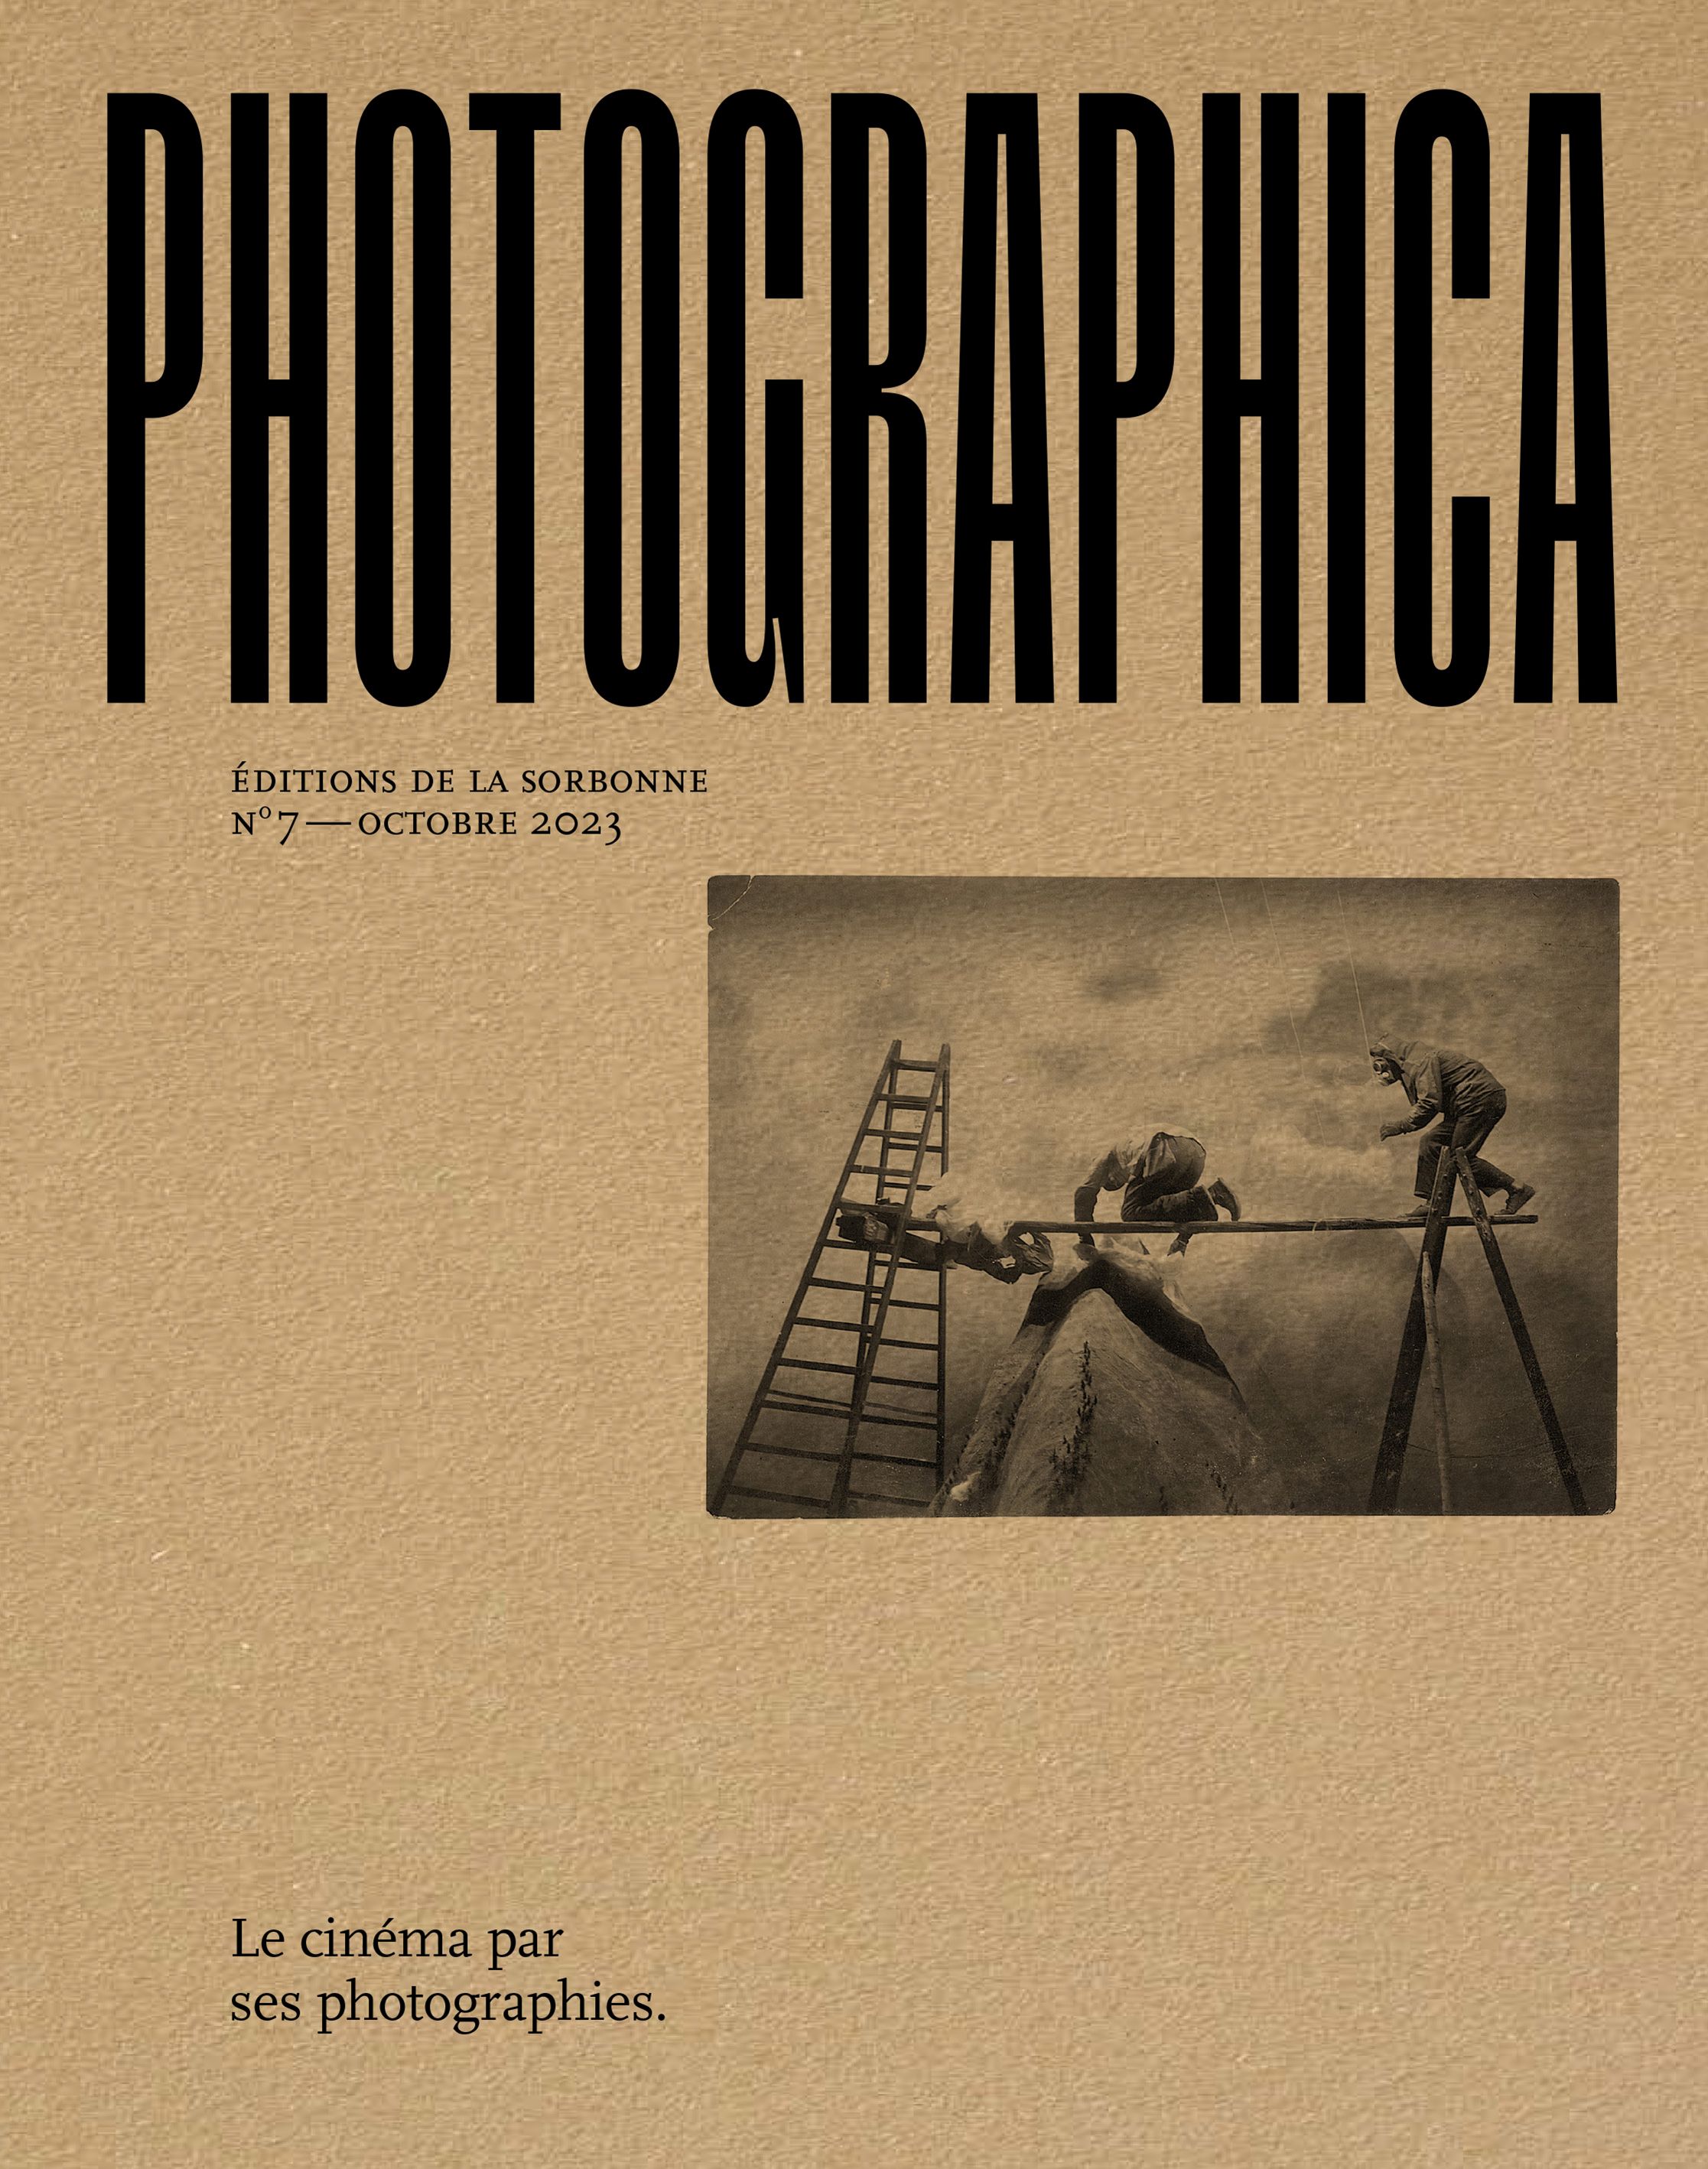 « Photographica » n°7, novembre 2023 "Le cinéma par ses photographies"